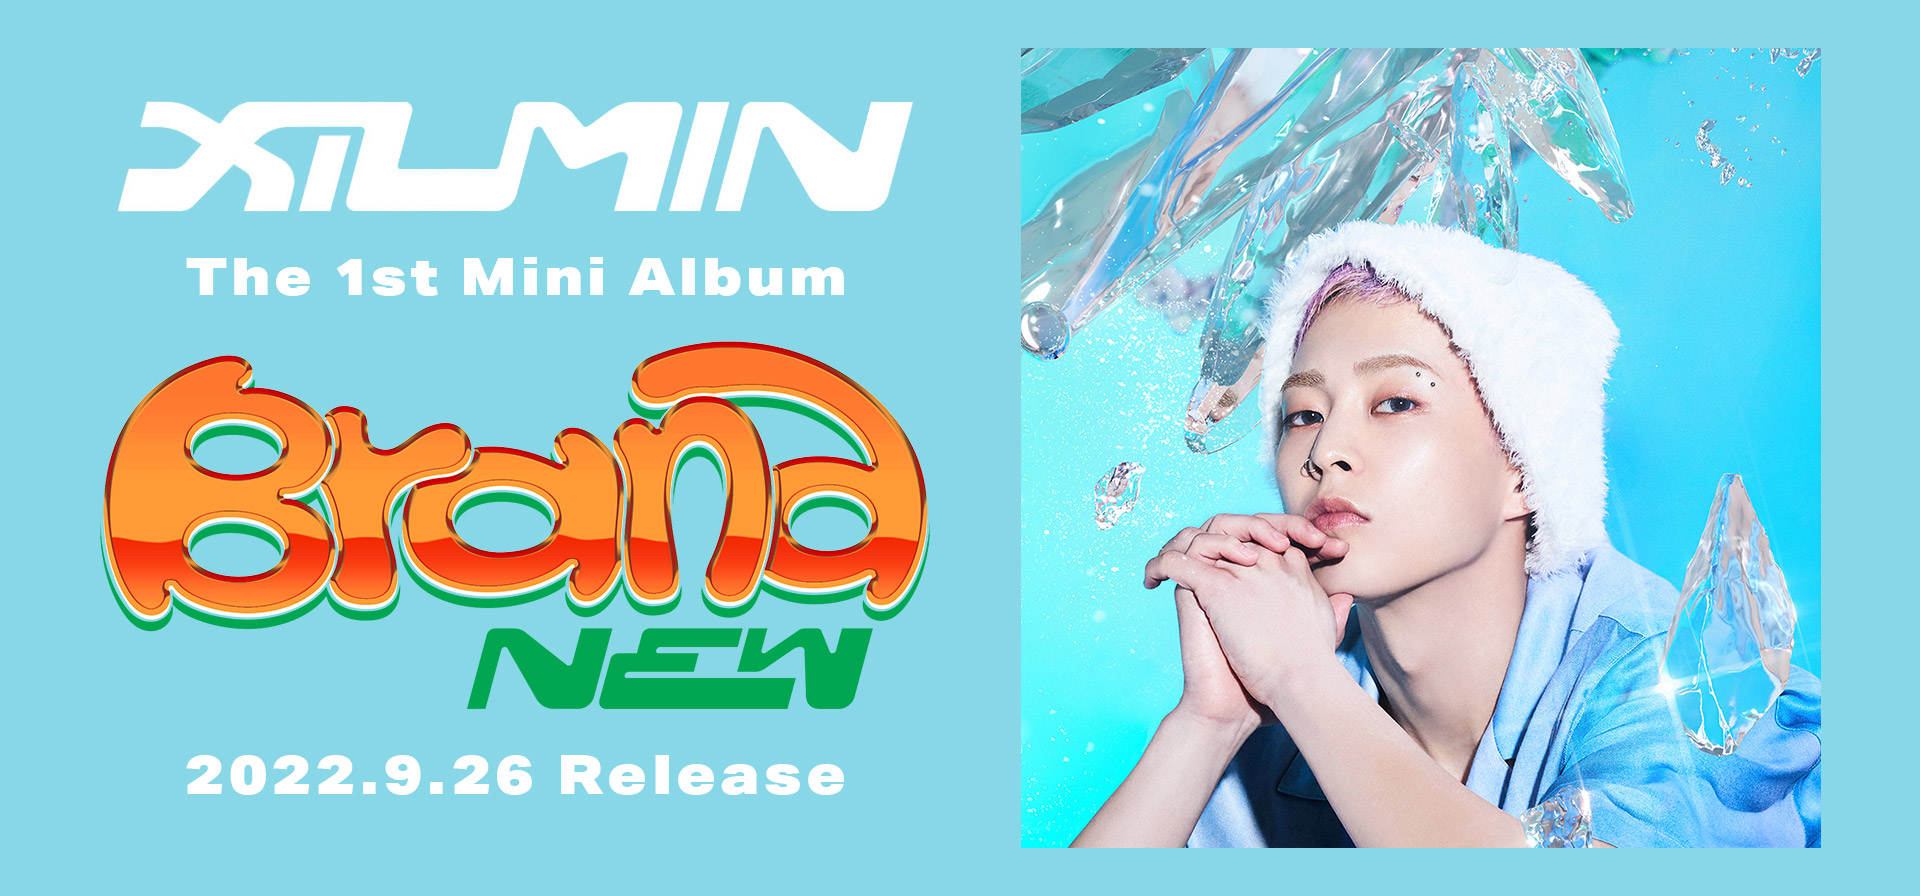 XIUMIN The 1st Mini Album 'Brand New' 2022.9.26 Release